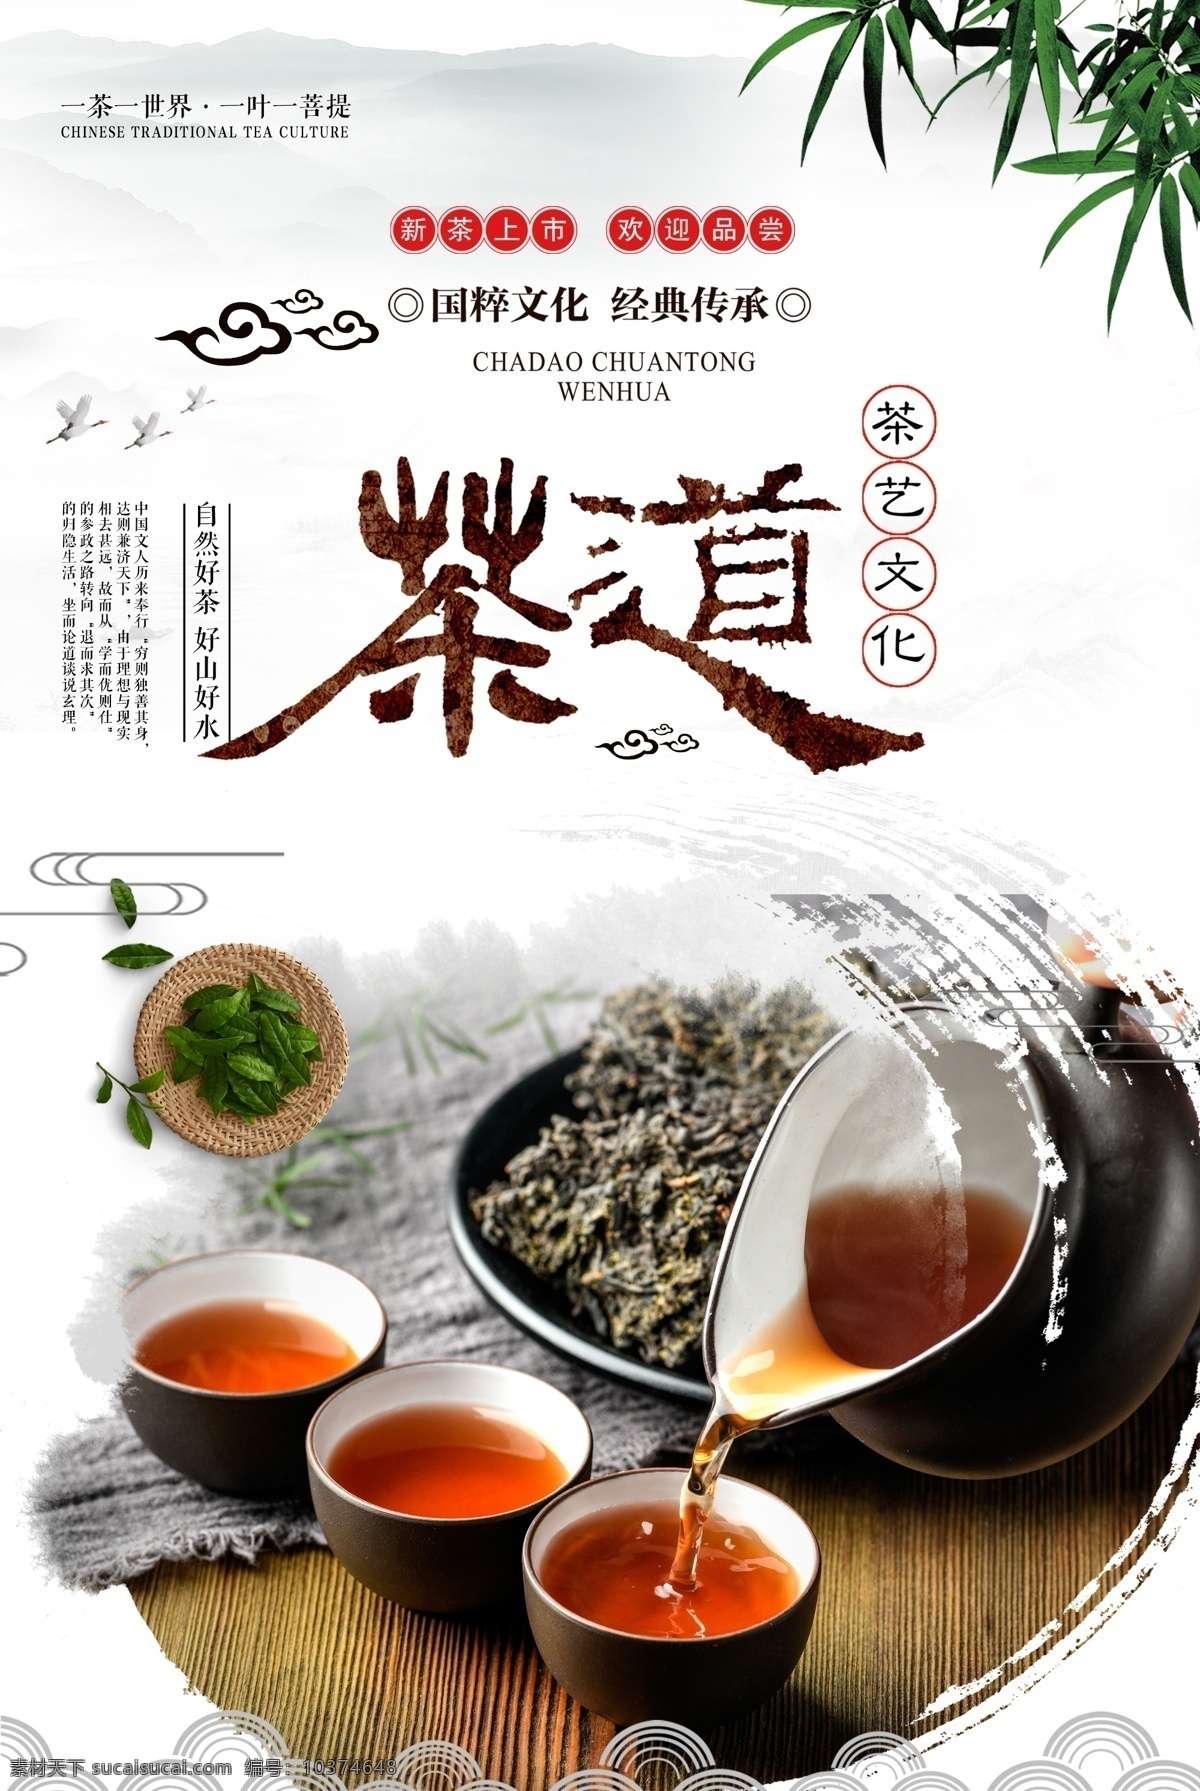 中国 茶道 文化 海报 中国茶道文化 茶文化 新茶上市 中国茶 养生茶文化 茶叶 茶壶 分层